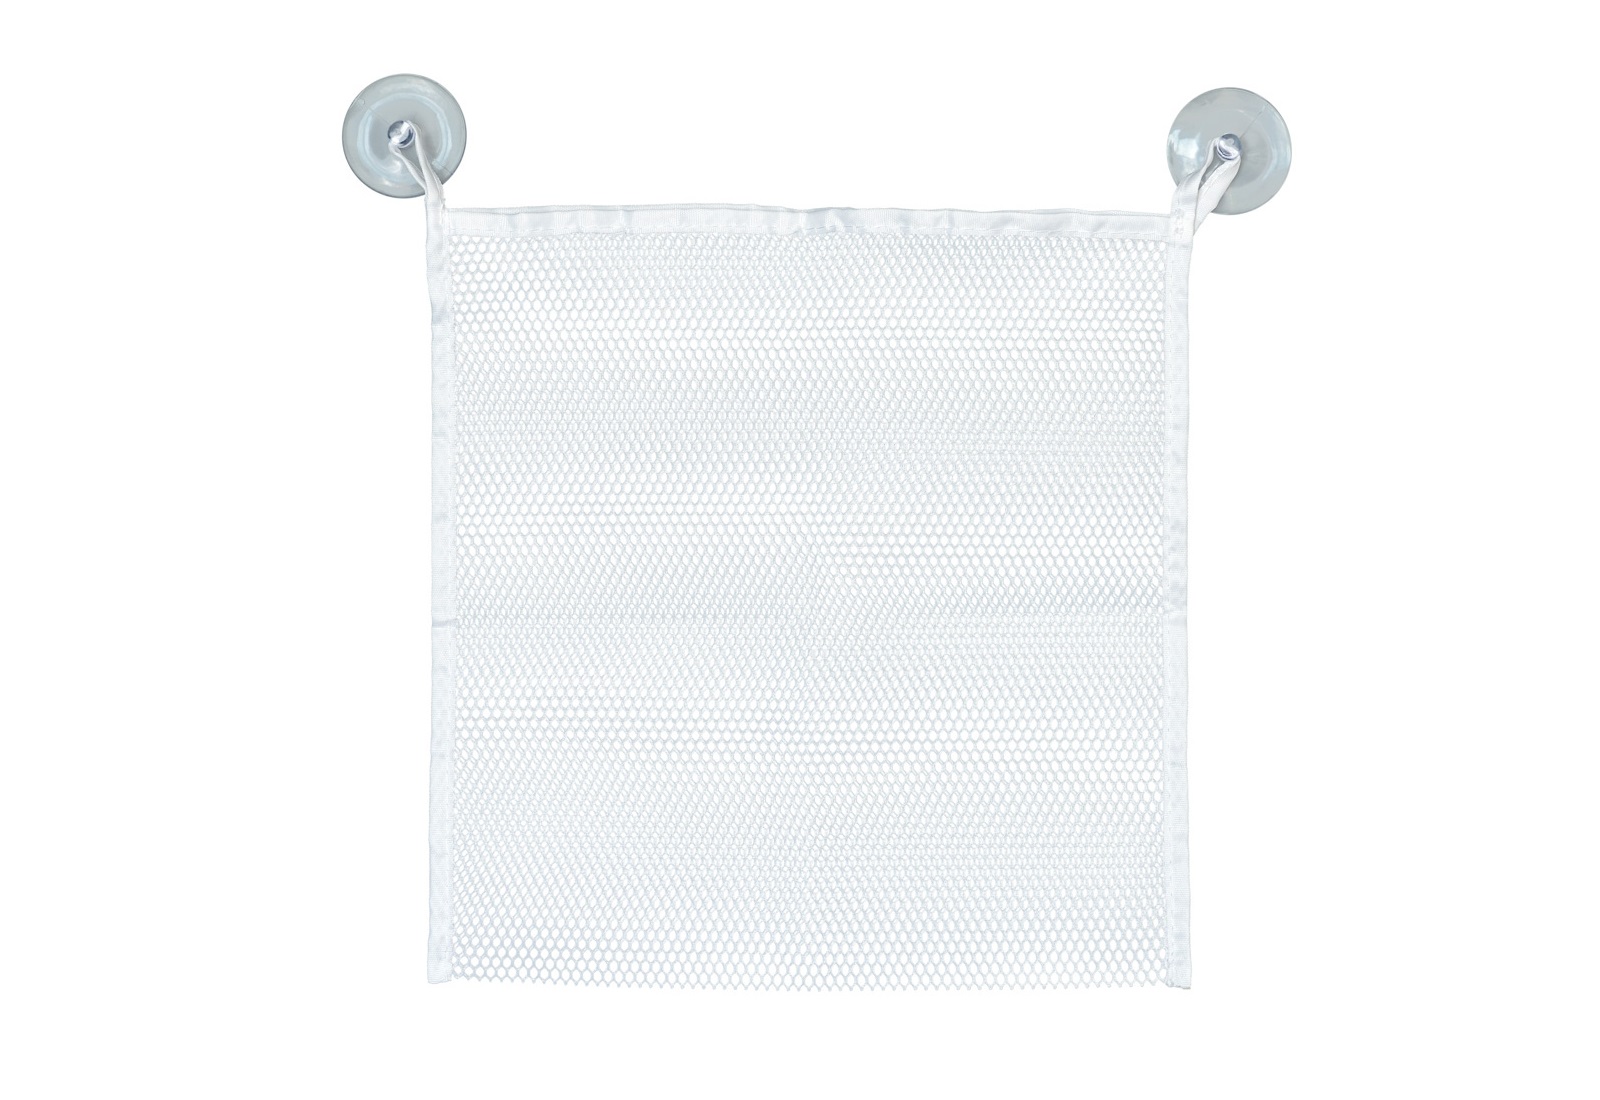 Součástí dodávky k vodolepkám Plastica 105591650 je bílá síťka s přísavkami, kterou využijete pro připevnění na dlaždice ve vaší koupelně.